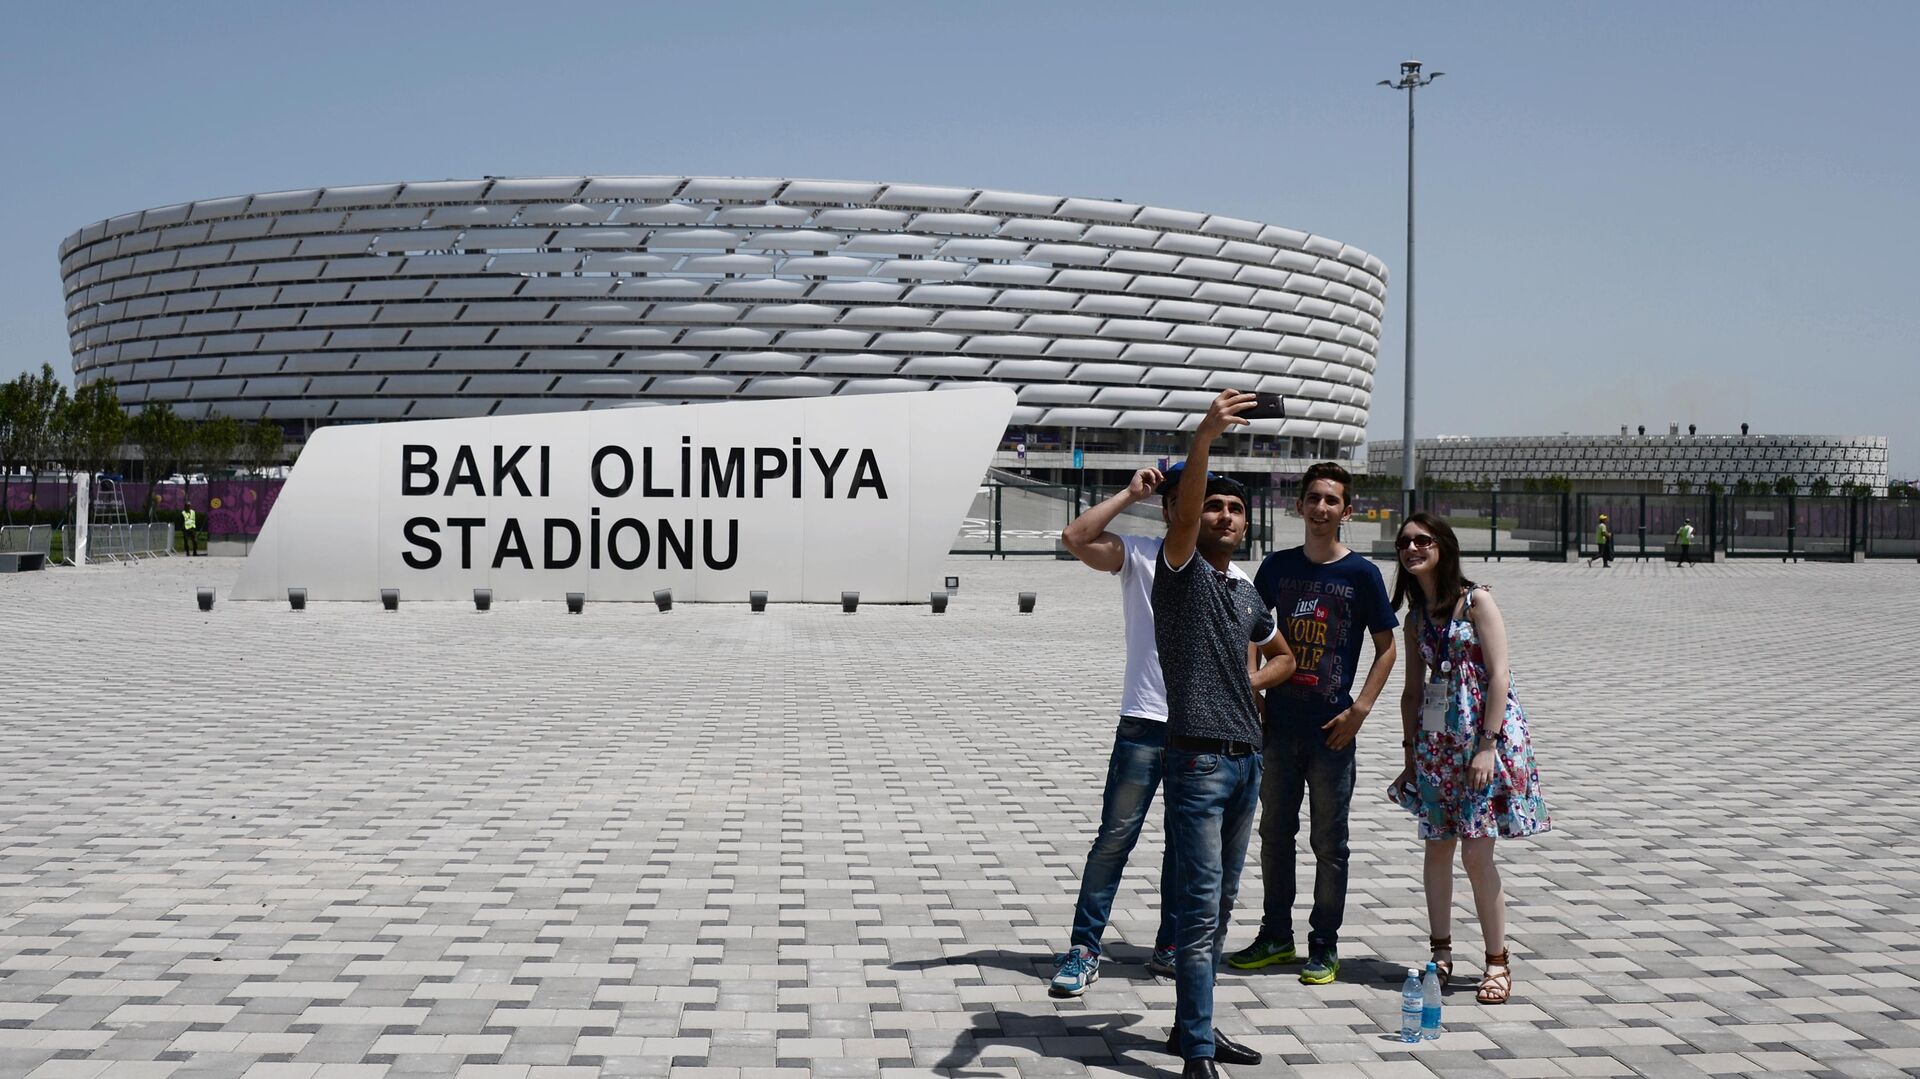 Олимпийский стадион в Баку - РИА Новости, 1920, 03.12.2020